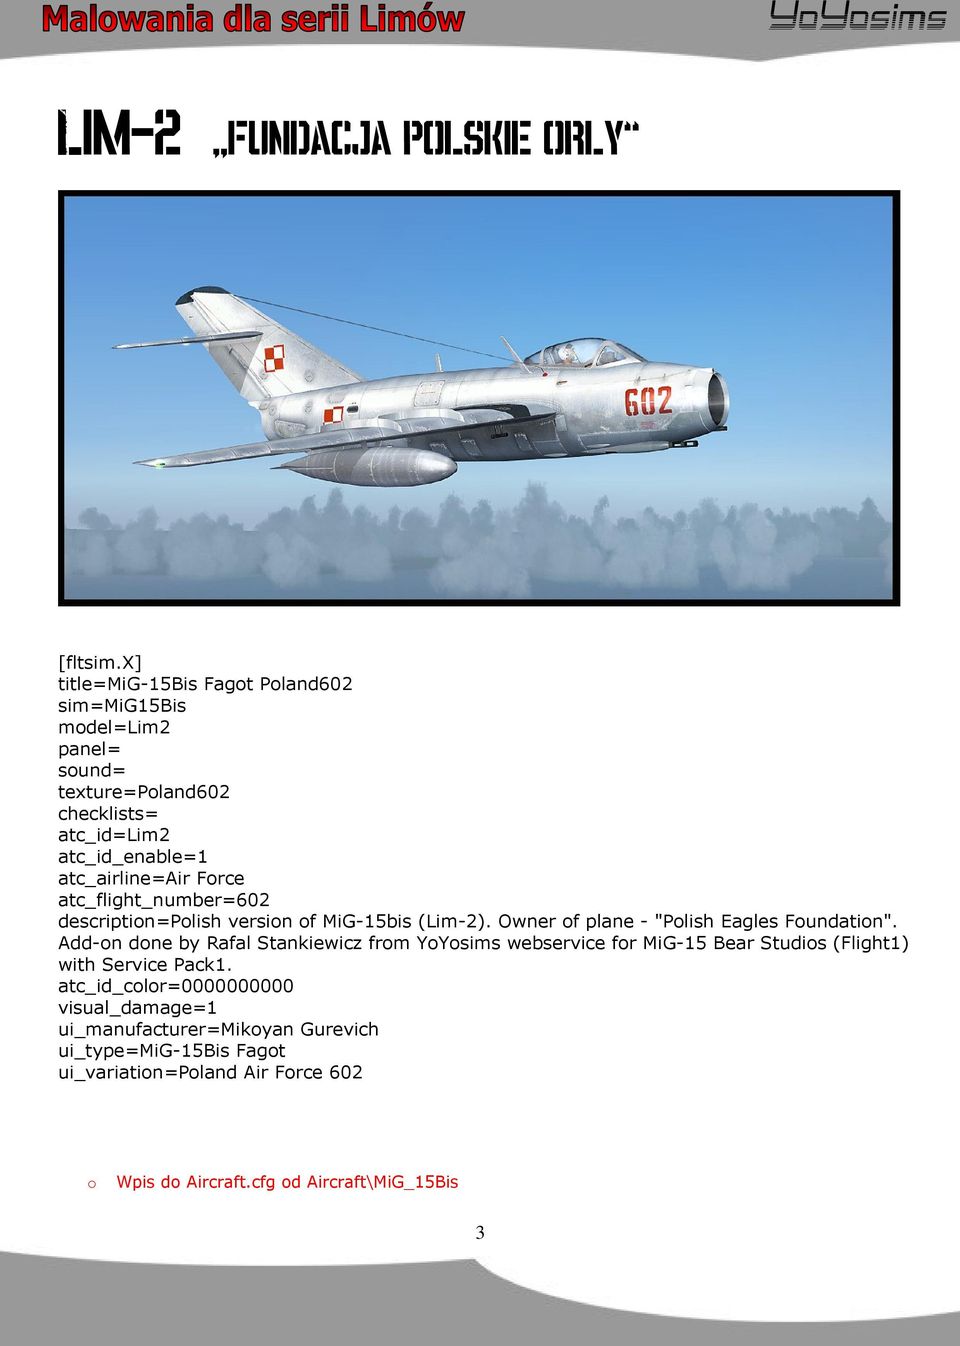 Force atc_flight_number=602 description=polish version of MiG-15bis (Lim-2). Owner of plane - "Polish Eagles Foundation".